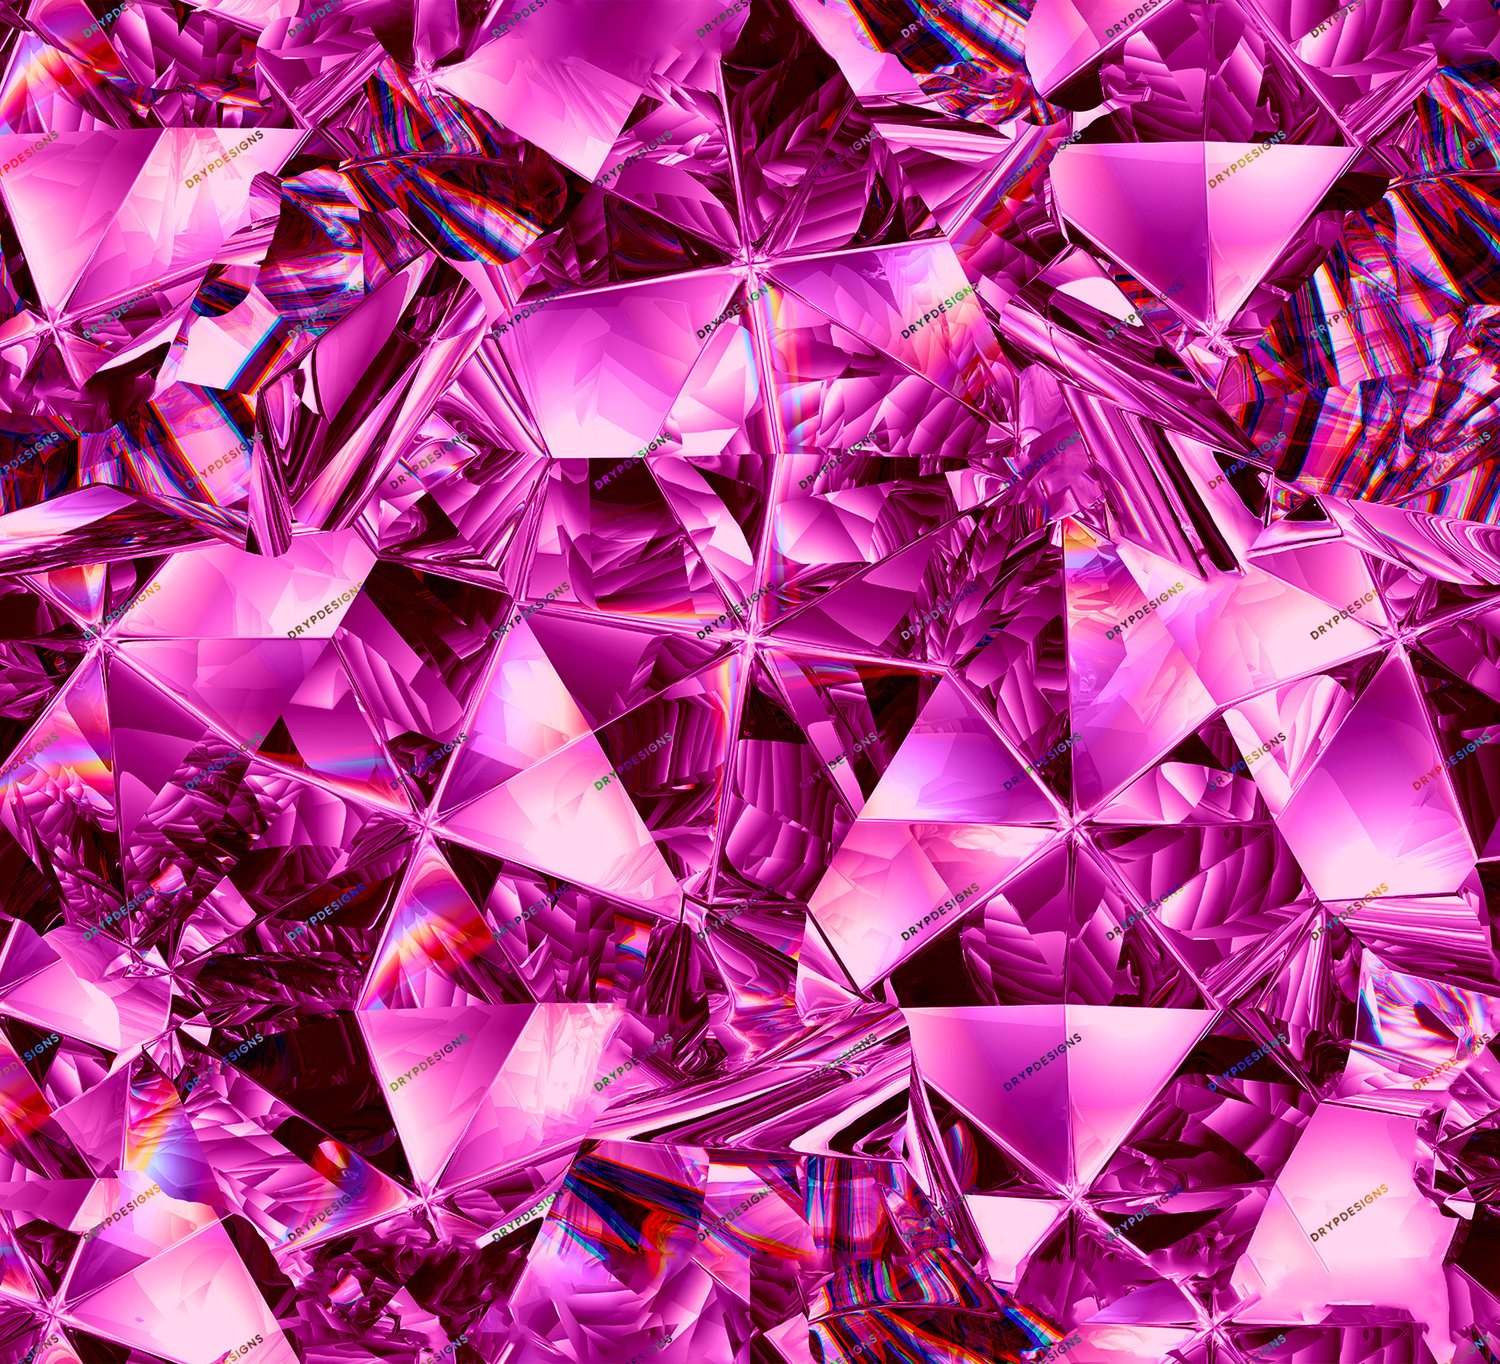 Bạn đam mê sắc đẹp của những viên kim cương hồng đa sắc? Khám phá ngay bộ sưu tập hình nền đẹp mắt với vô vàn màu sắc và kiểu dáng độc đáo. Chắc chắn bạn sẽ cảm thấy vô cùng thích thú và mãn nhãn bởi những hình ảnh đẳng cấp, tinh tế và lung linh nhất.